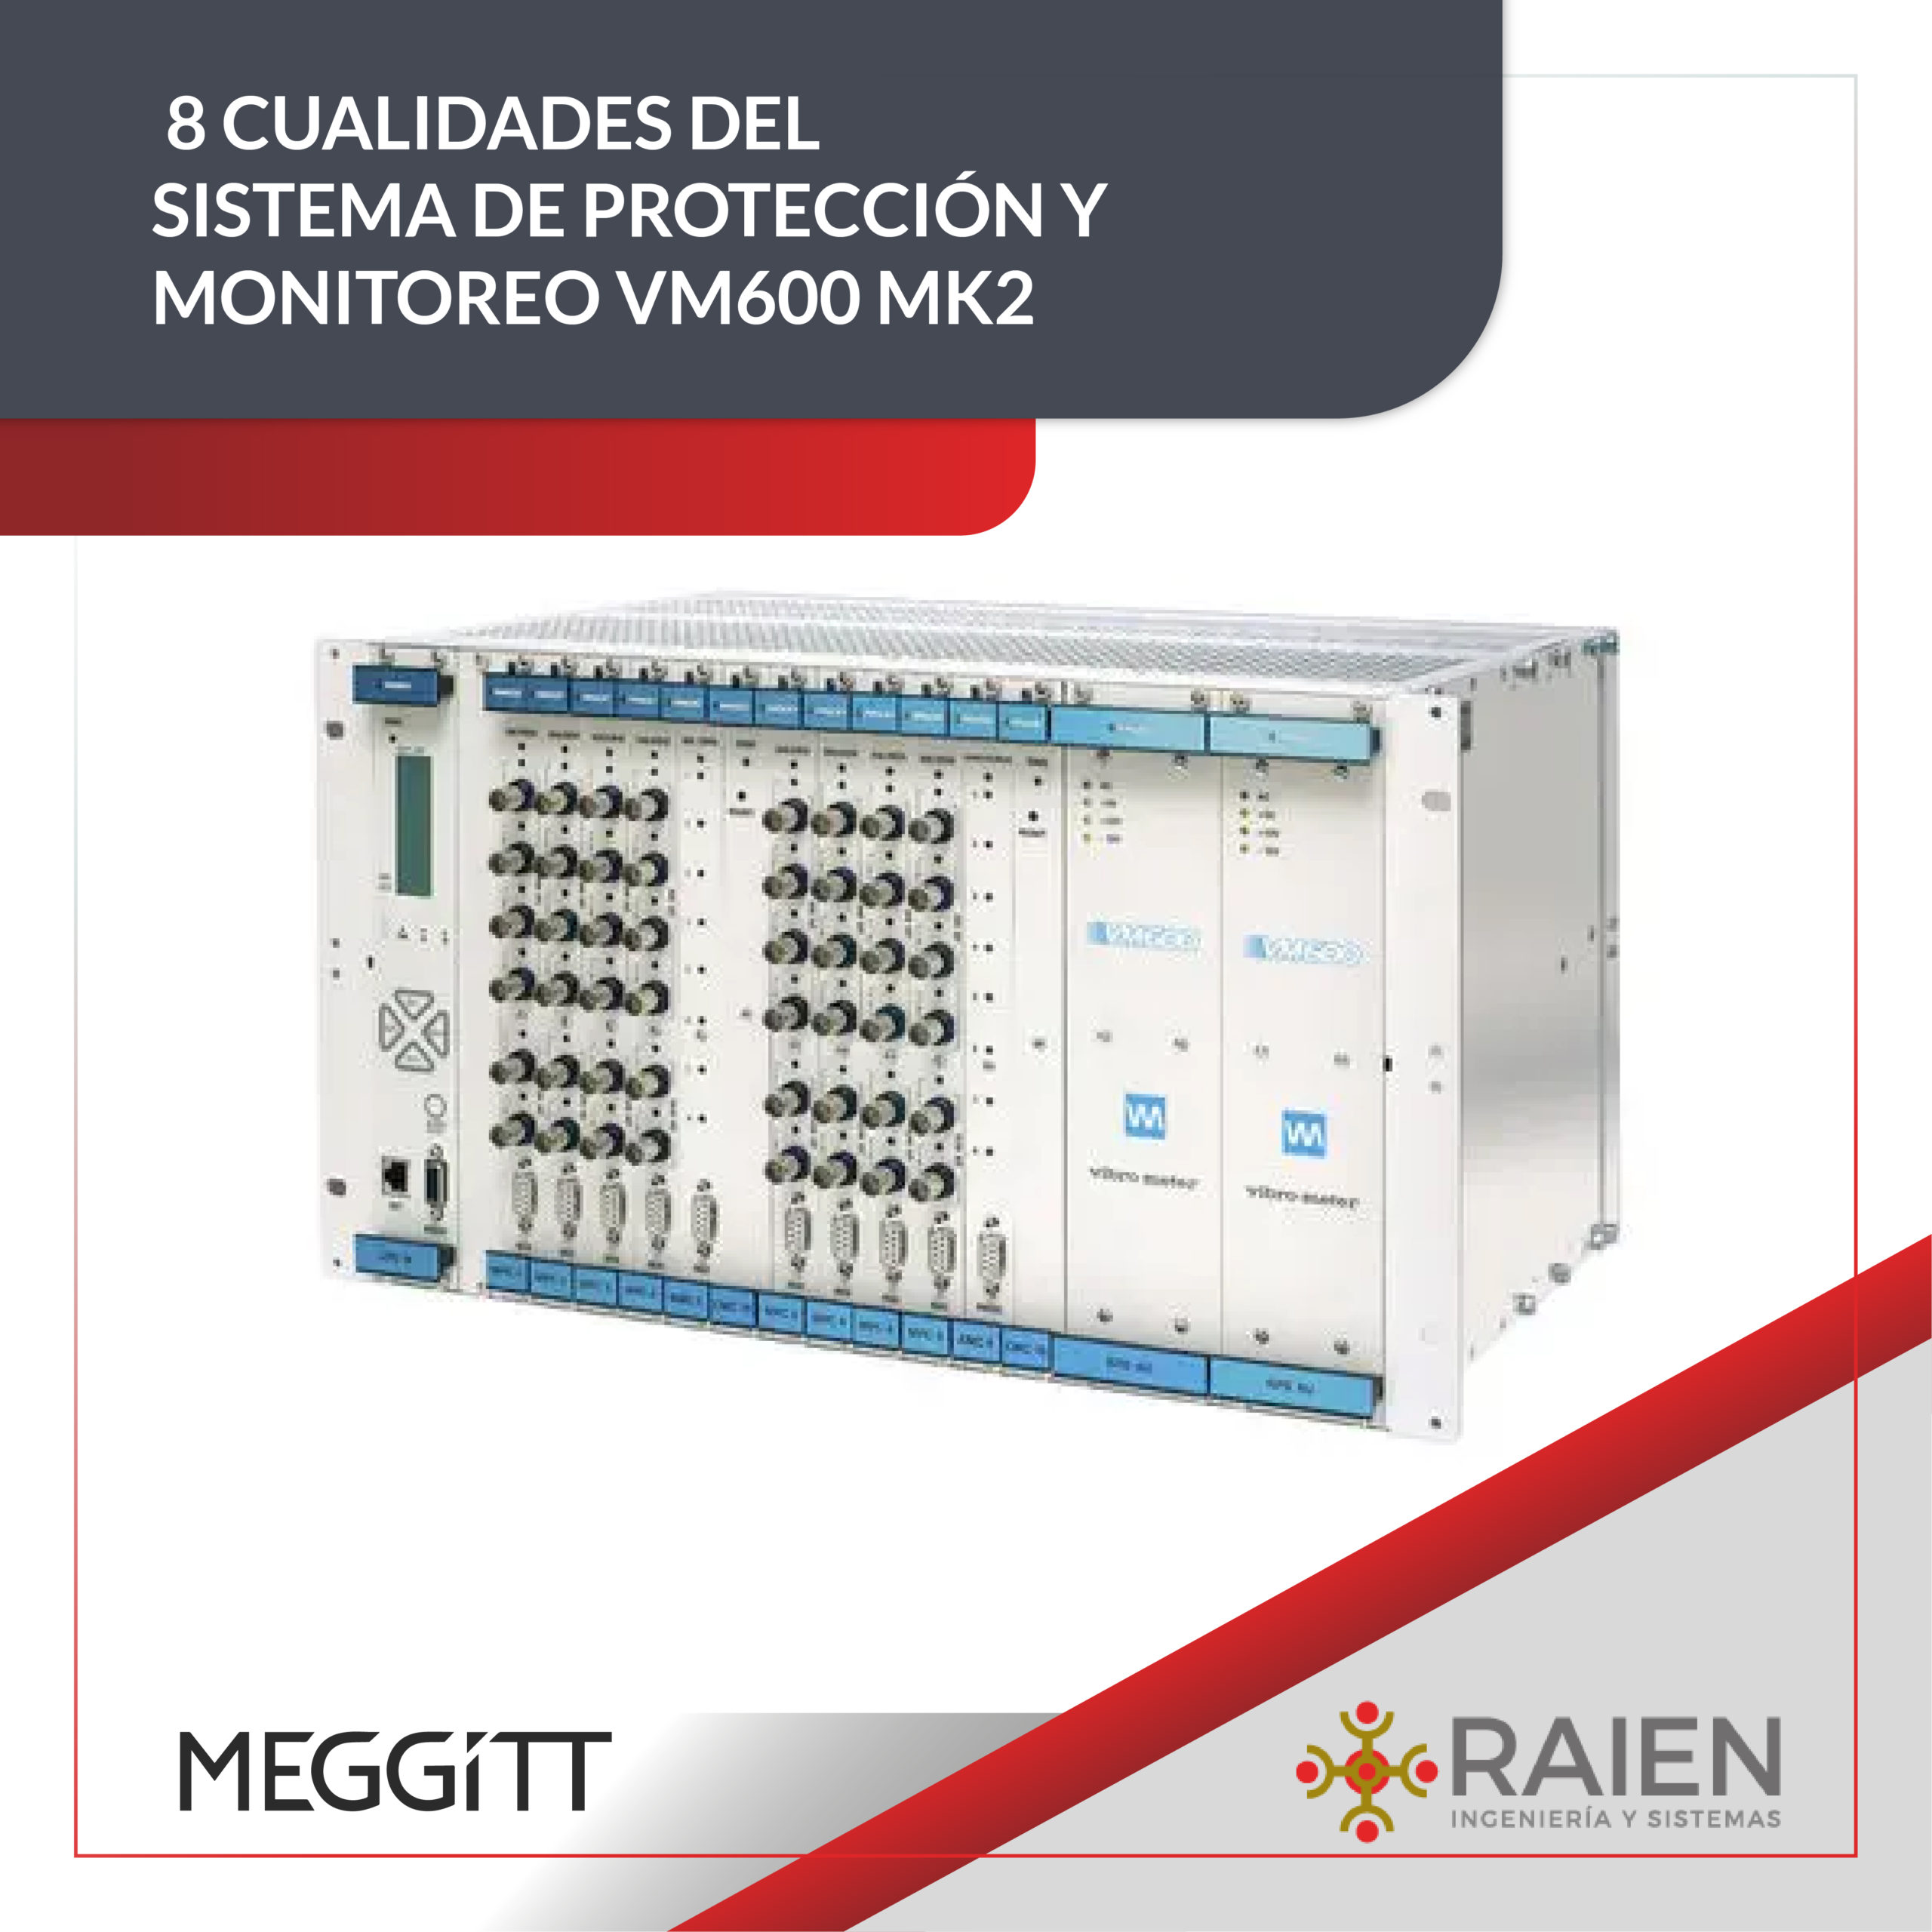 8 Cualidades del sistema de Protección y Monitoreo VM600 Mk2